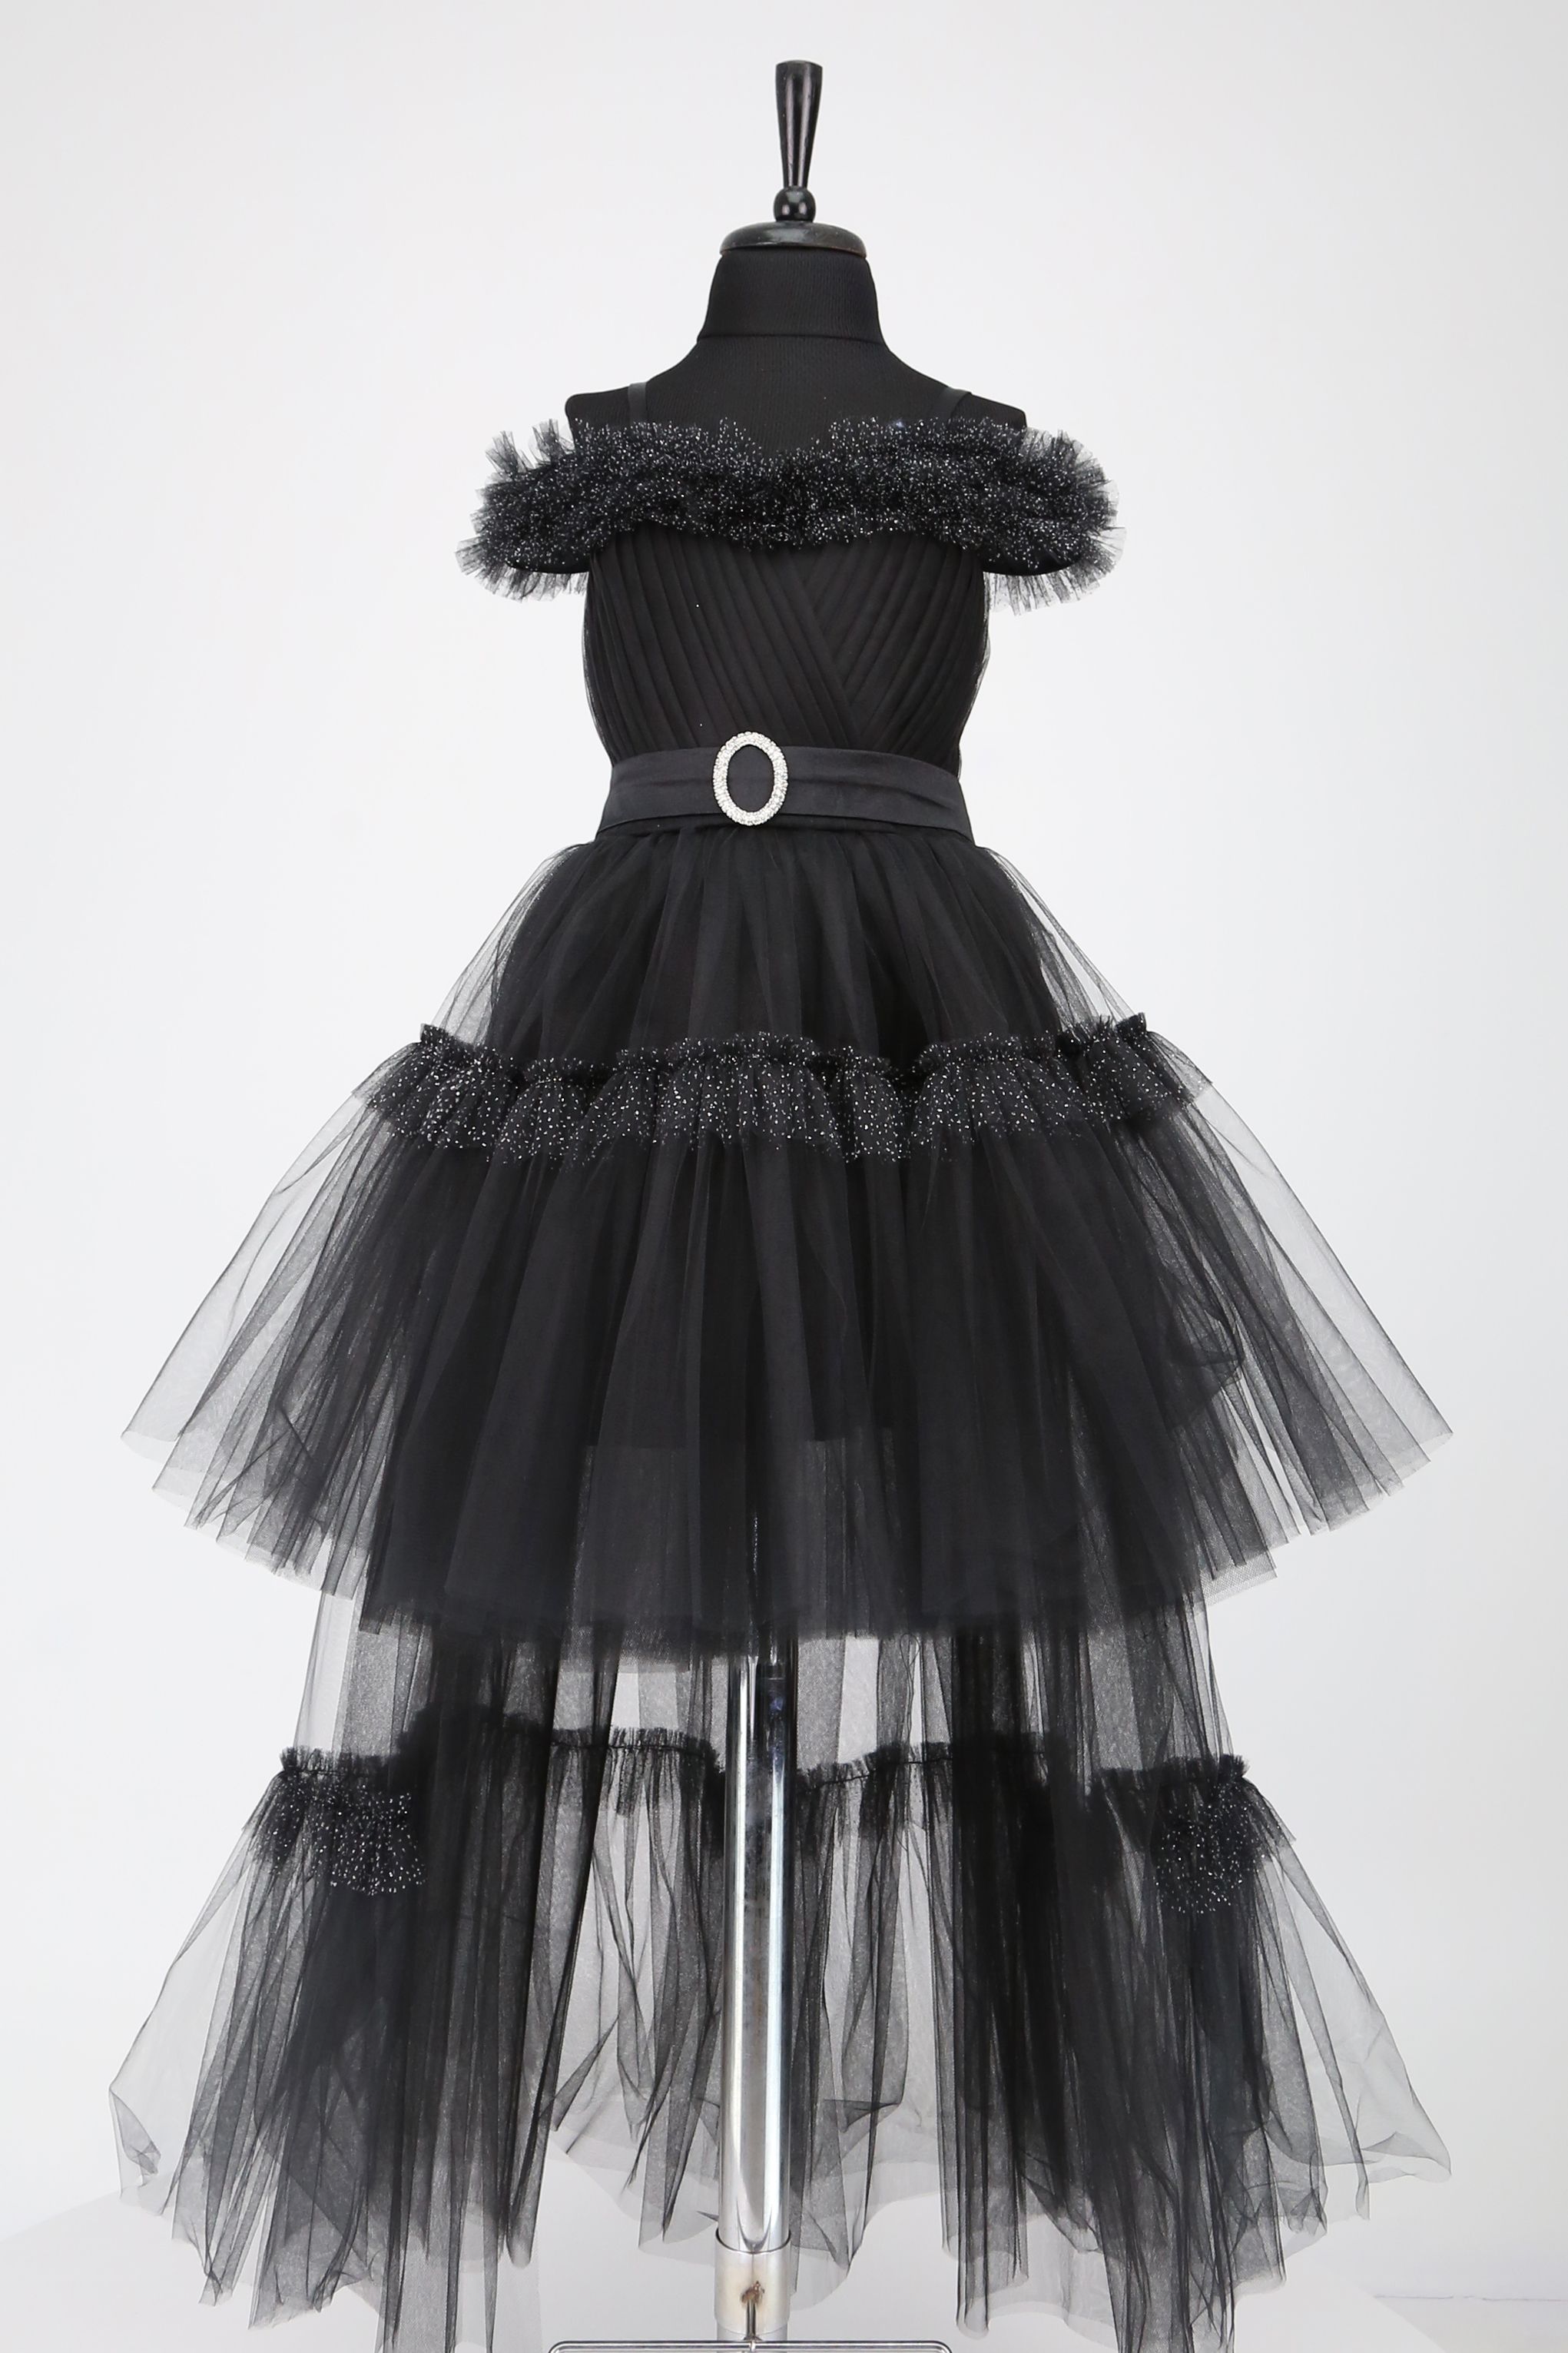 5-12 Yaş Arası Kız Çocukları için Kuyruklu Kabarık Abiye Elbise - Siyah